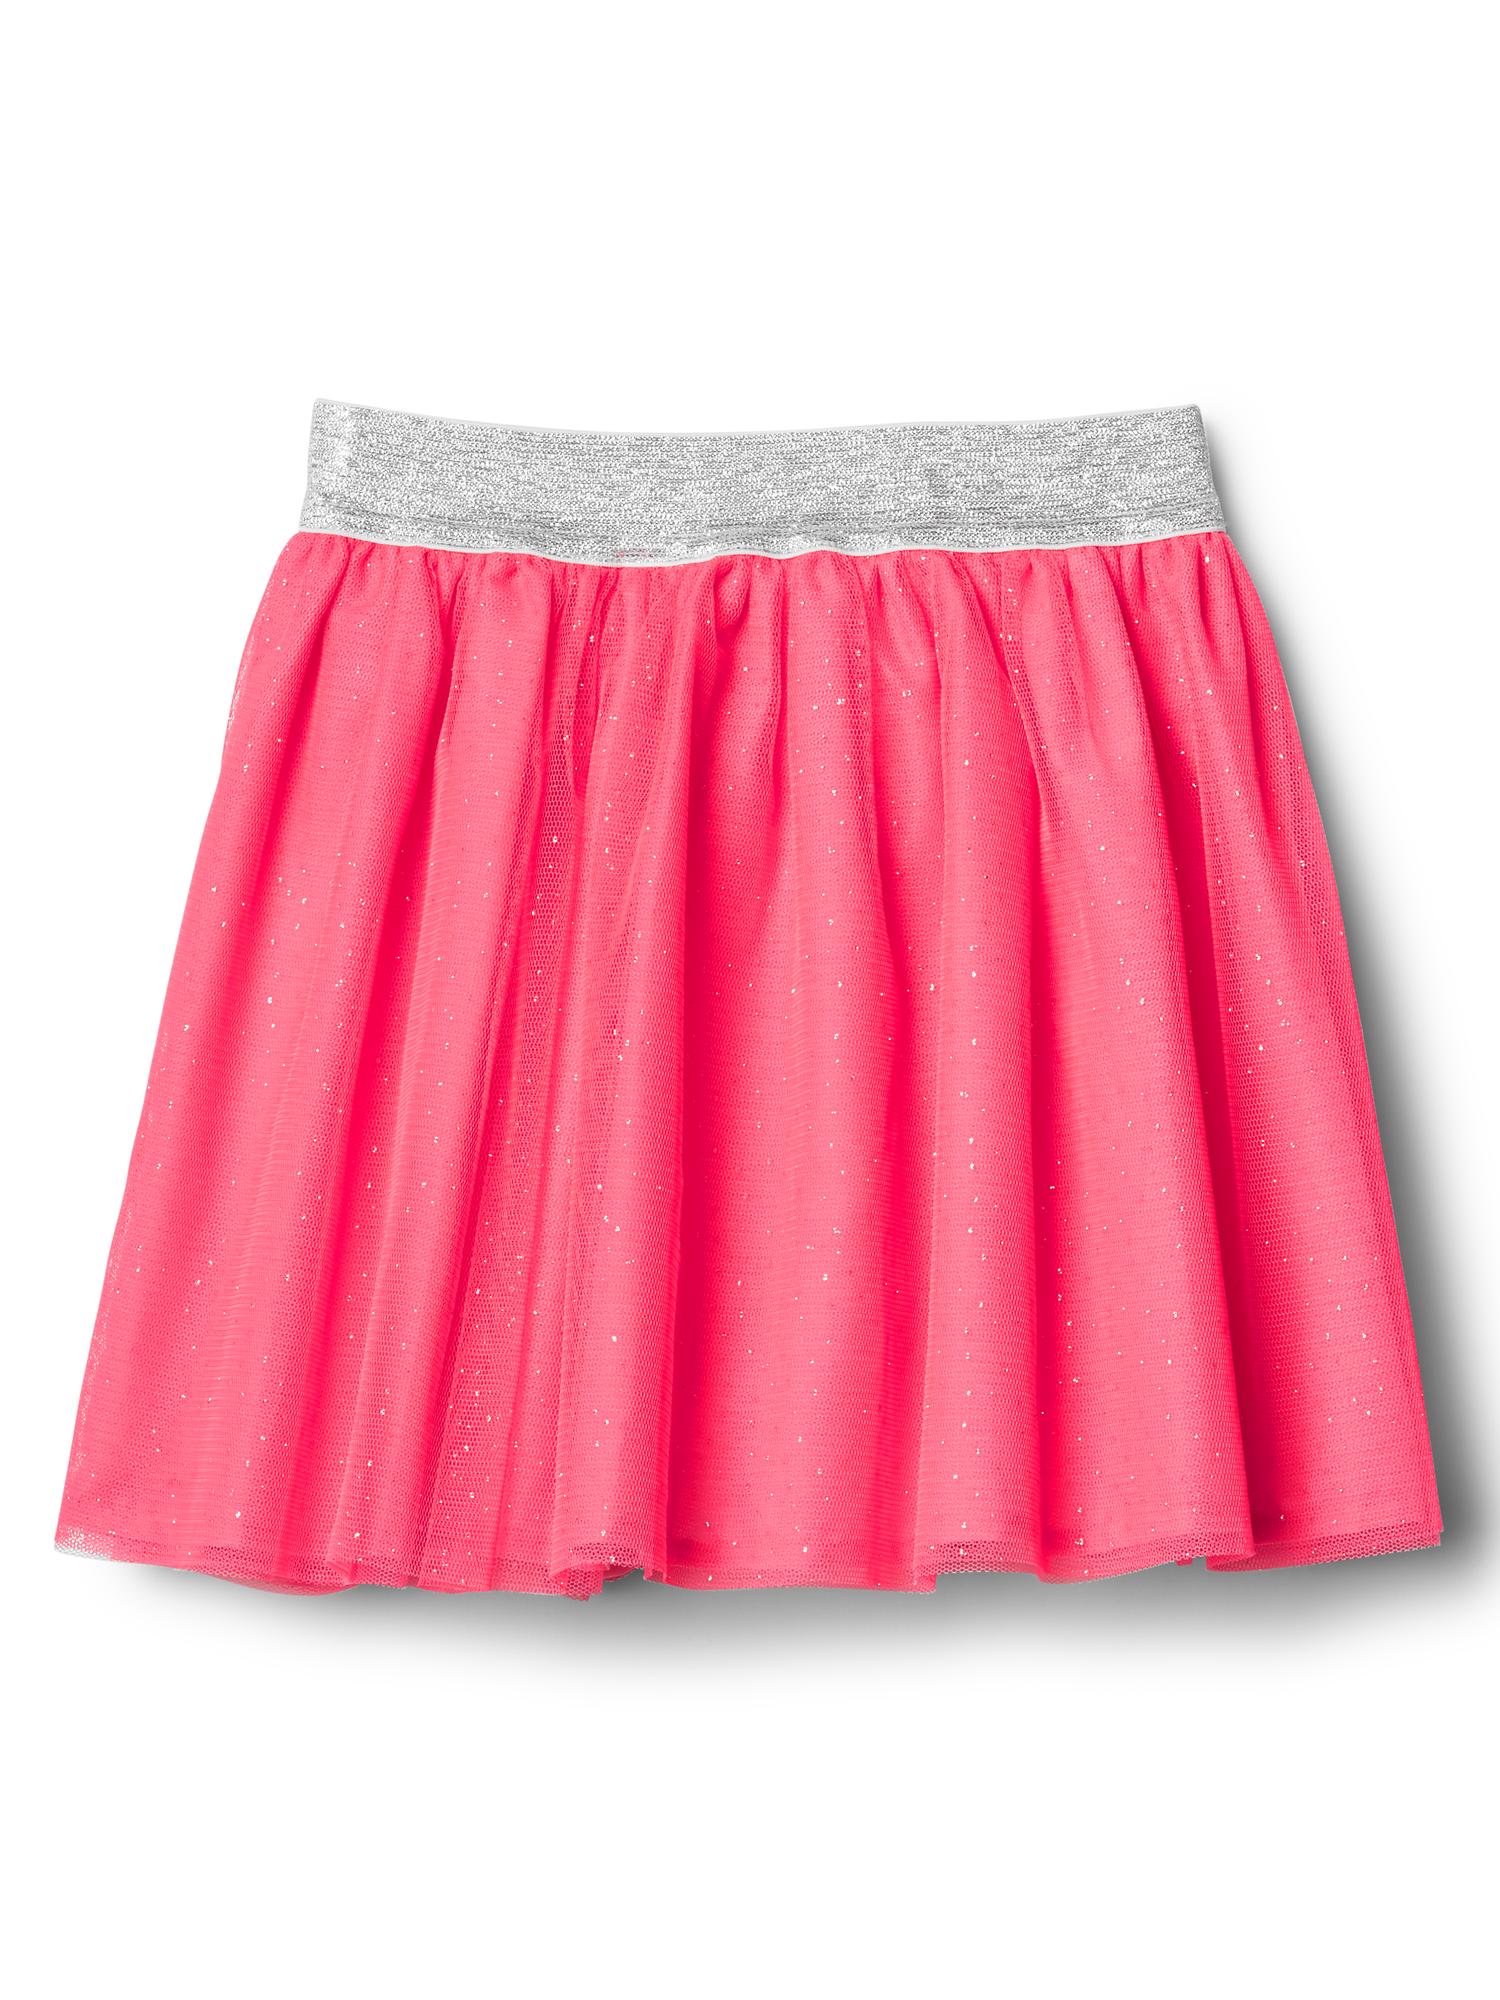 Shimmer neon tulle skirt | Gap